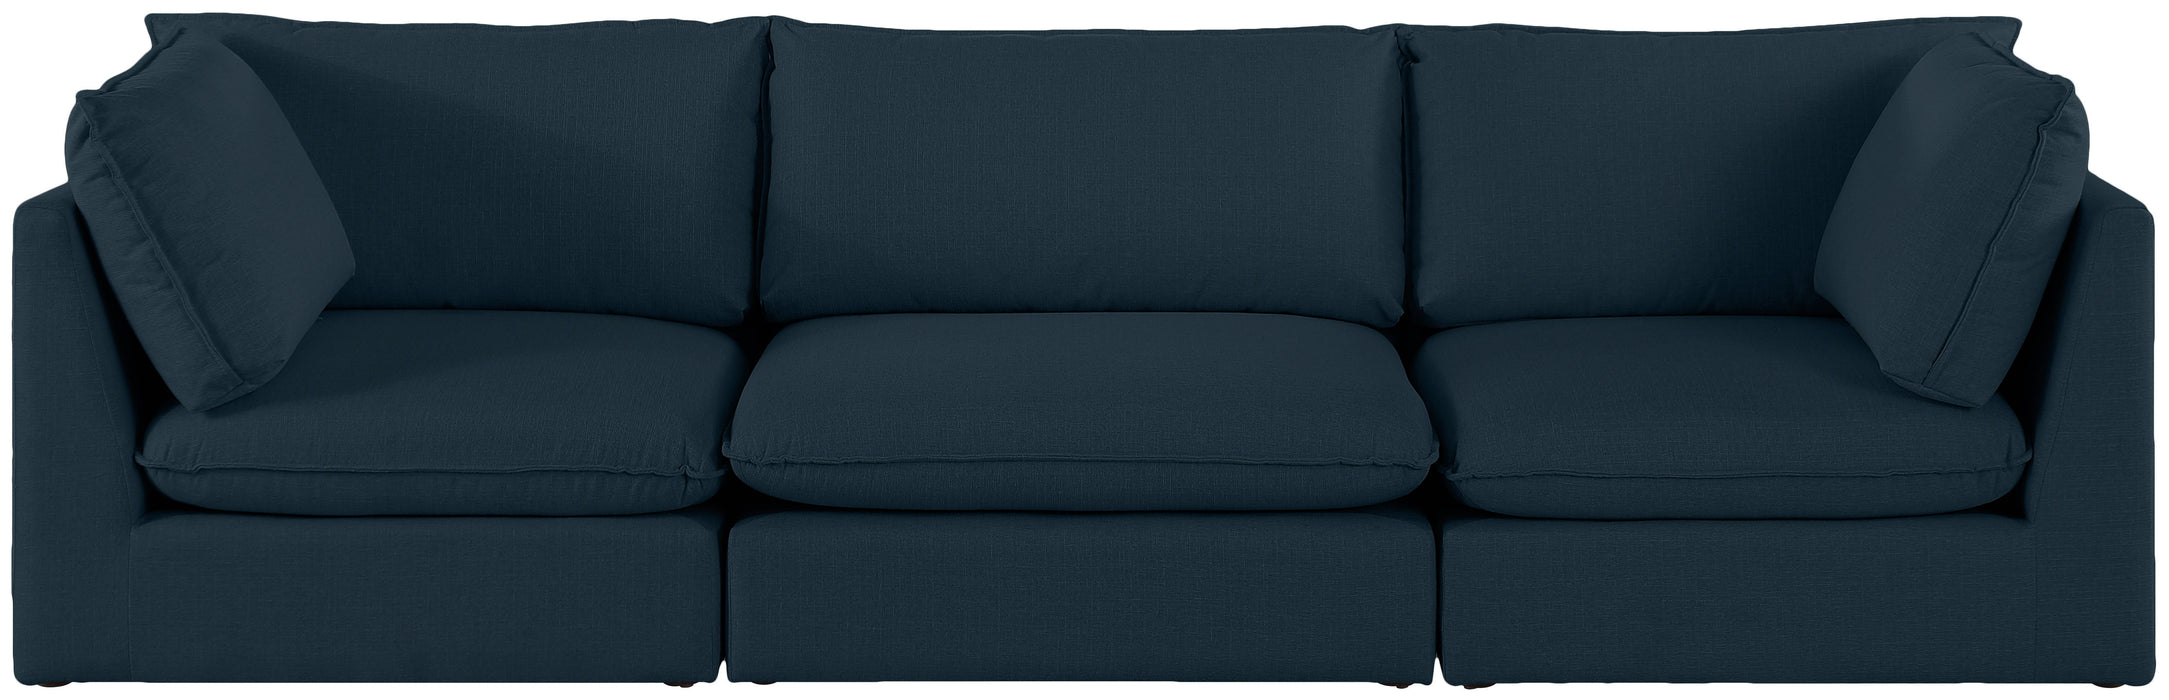 Mackenzie - Modular Sofa 3 Seats